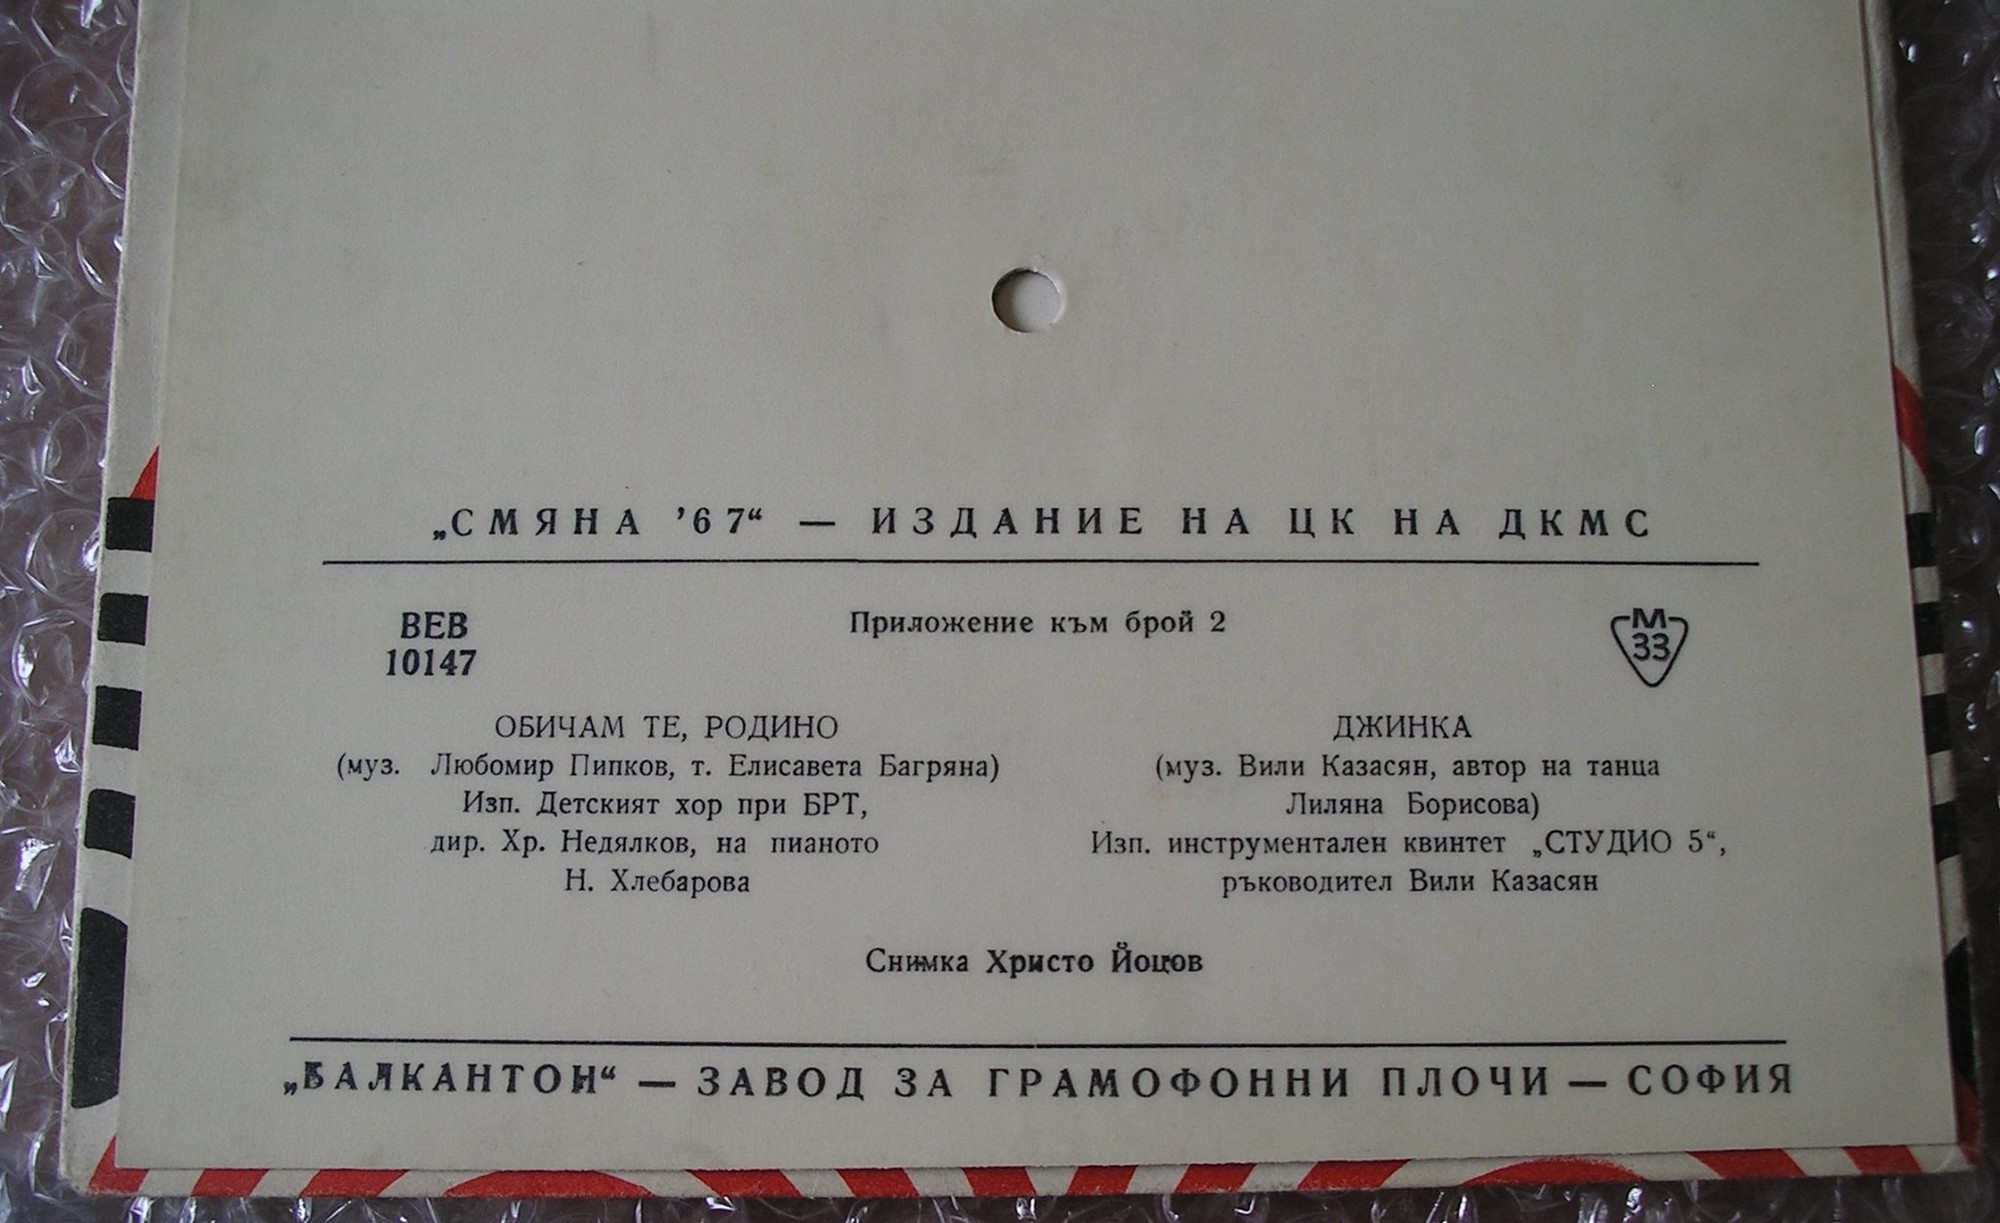 "Смяна-67" - издание на ЦК на ДКМС (приложение към брой 2)